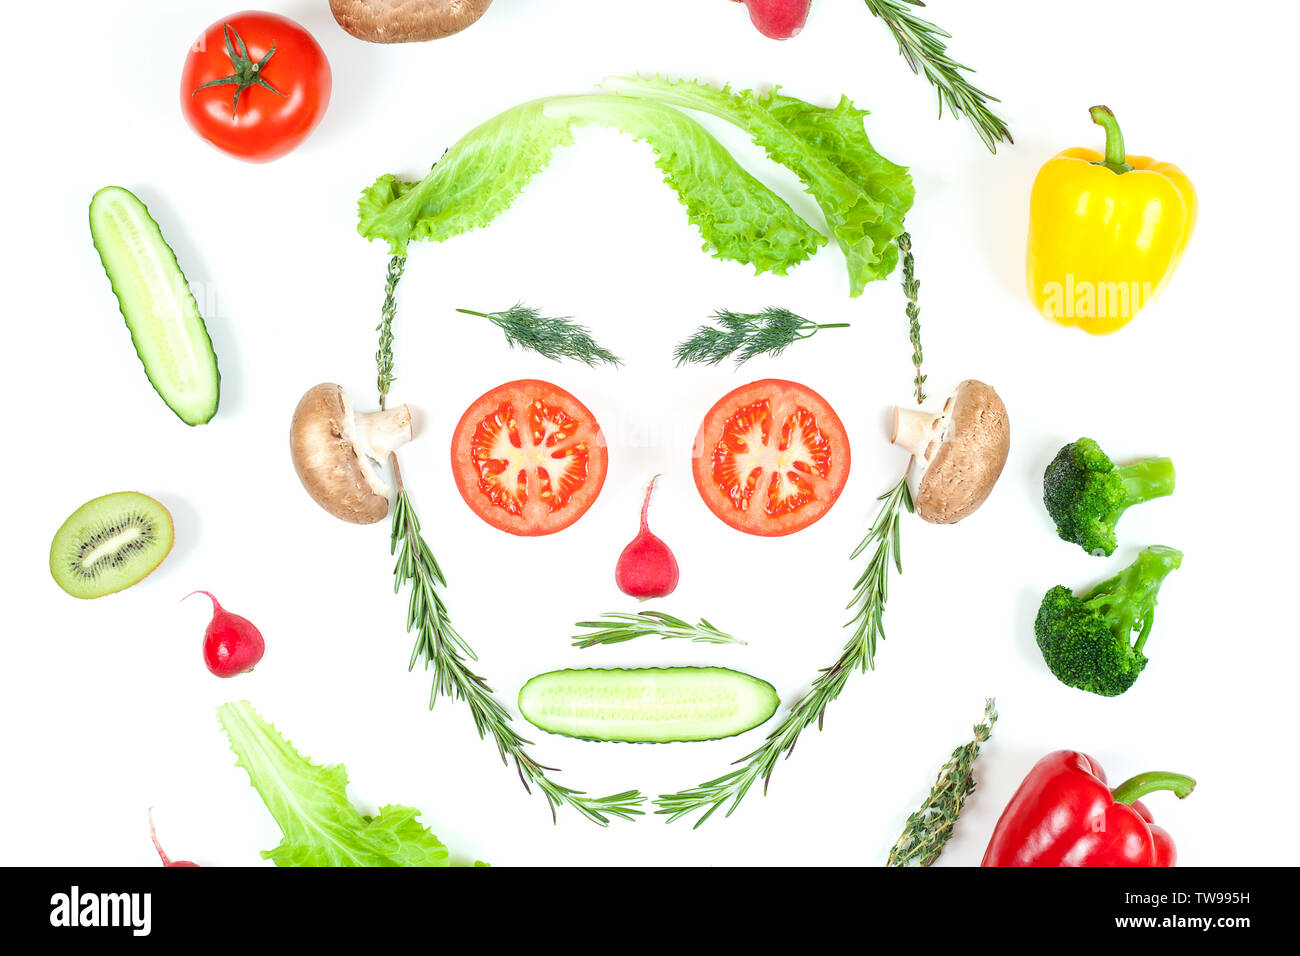 Drôle de visage de différents légumes, tomates, concombre, radis, aneth et Rosemary isolé sur fond blanc. La saine alimentation et de la nourriture végétalienne concept Banque D'Images